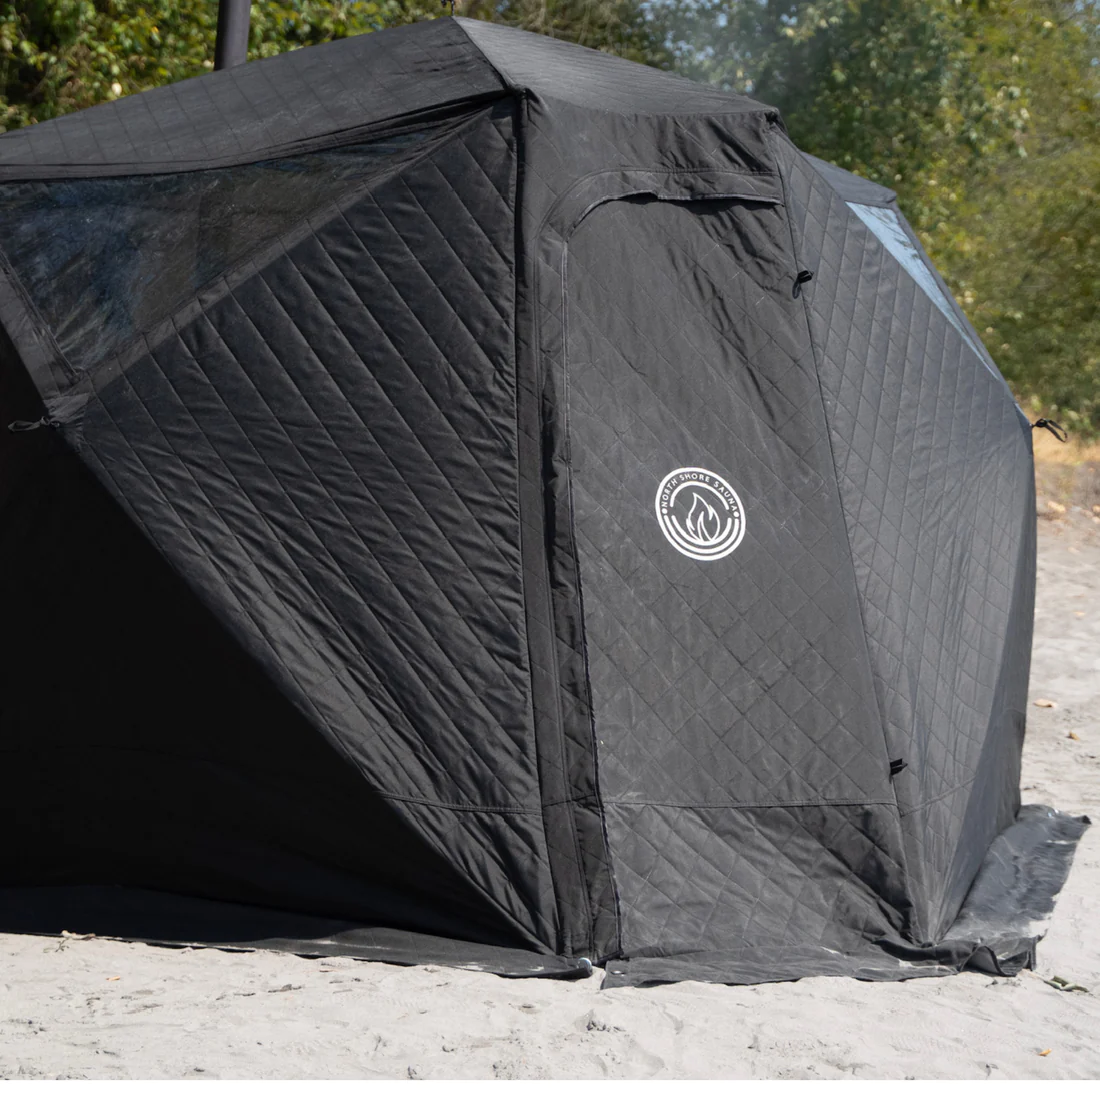 Nova 6 tent sauna on the beach